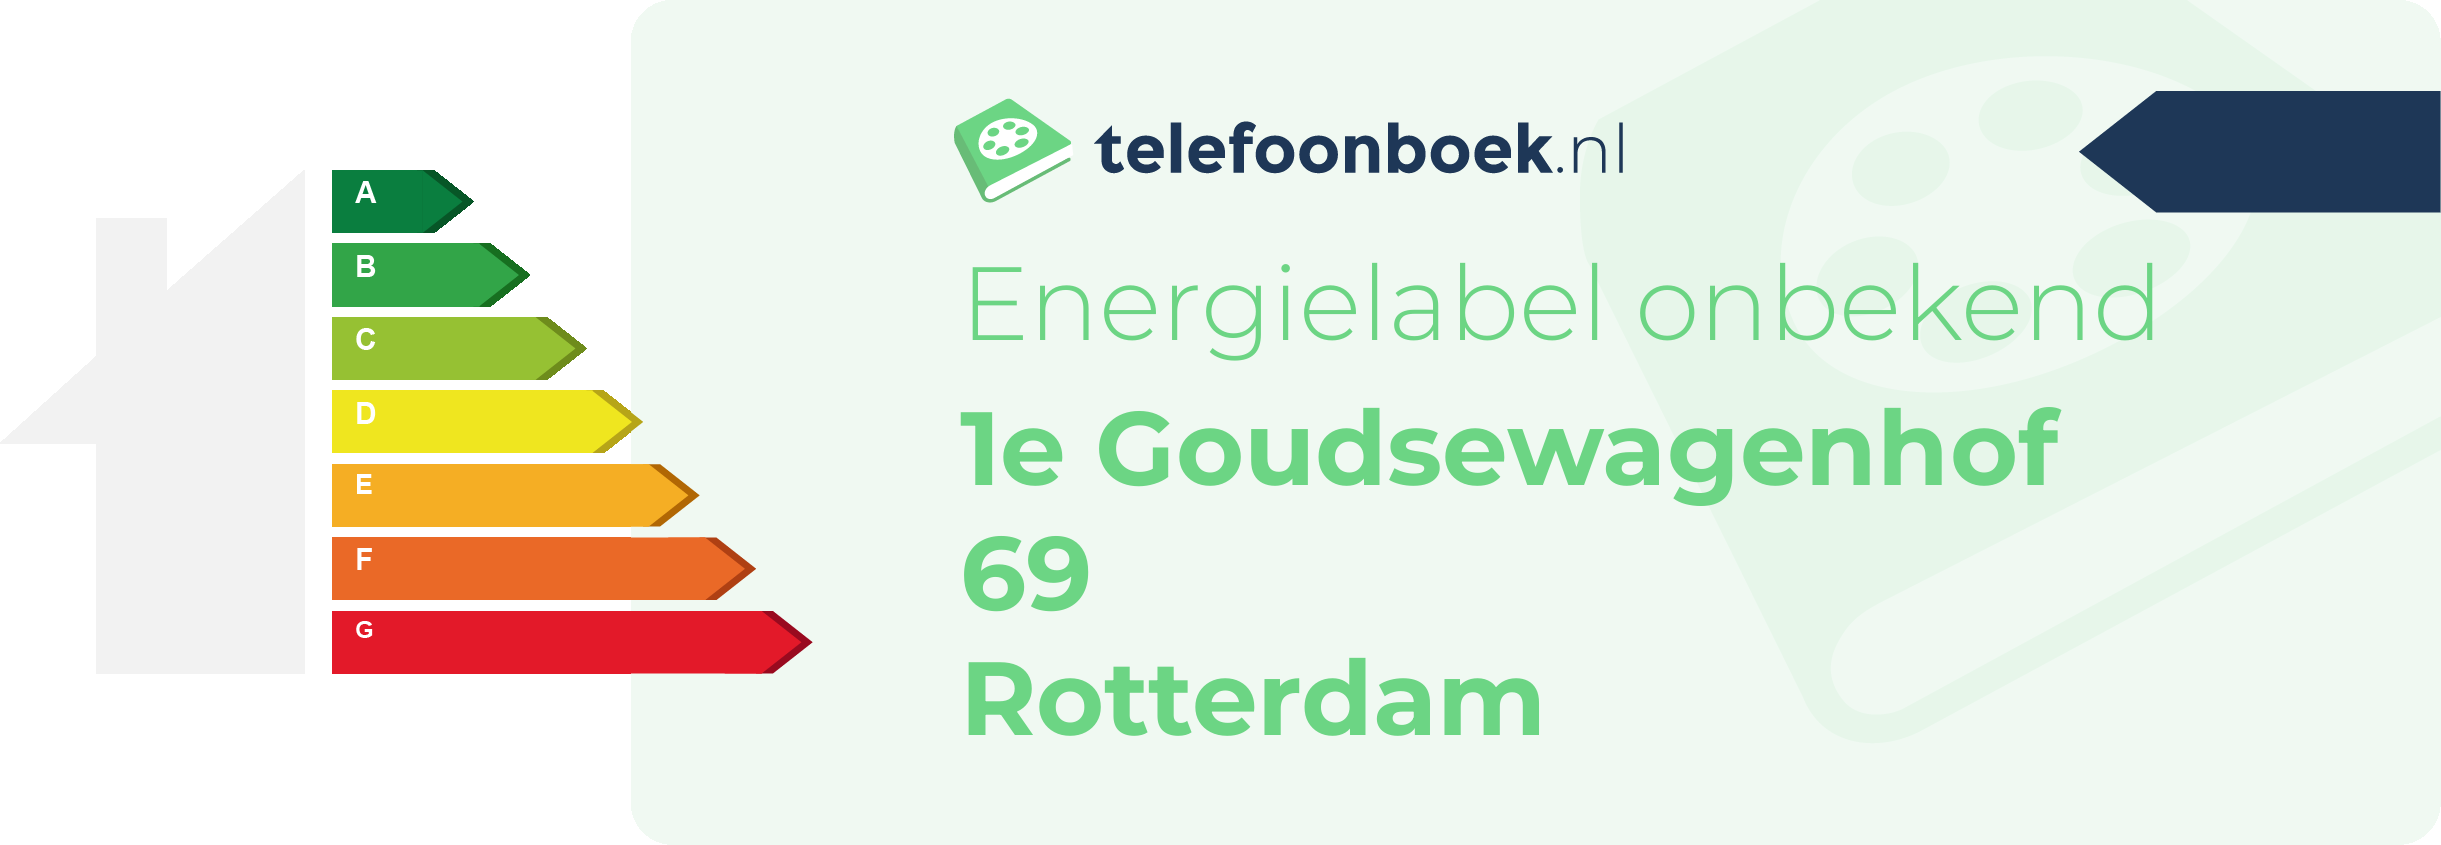 Energielabel 1e Goudsewagenhof 69 Rotterdam